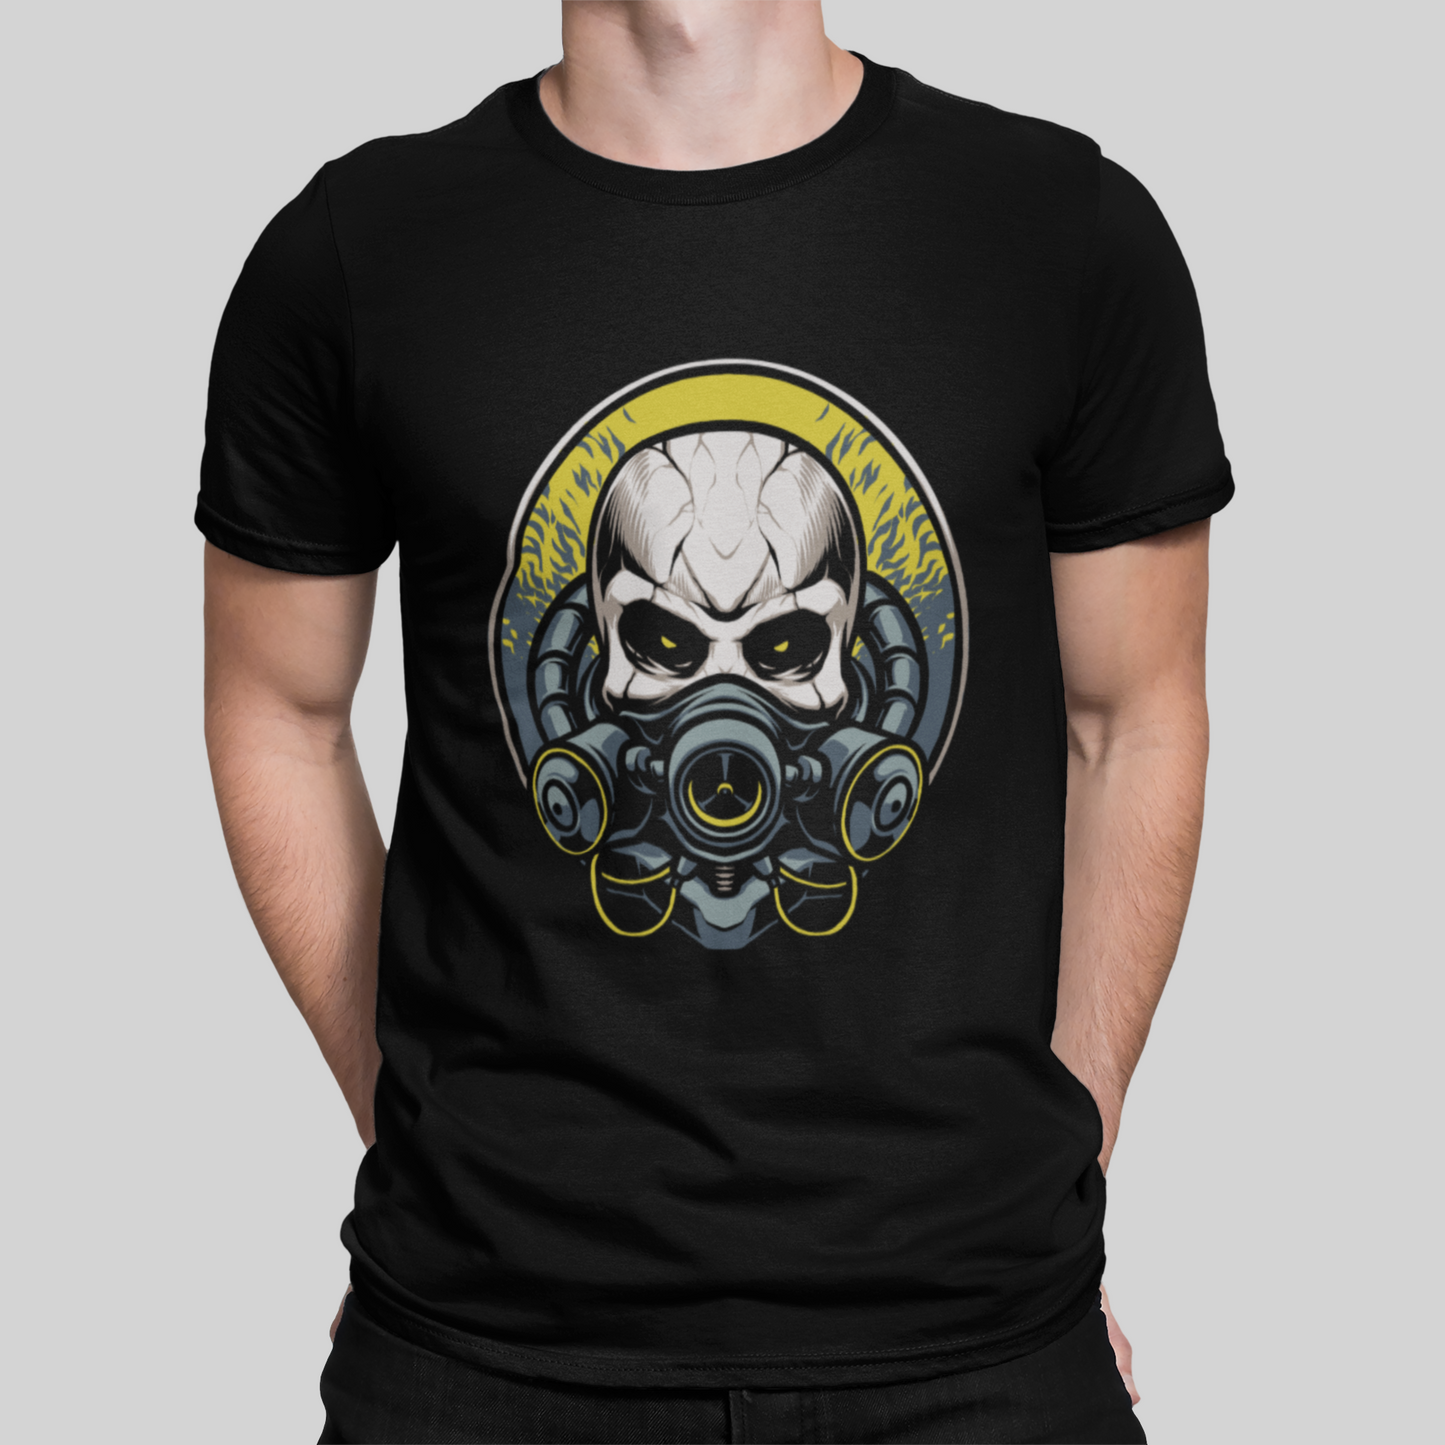 Spy Skull Black T-Shirt For Men